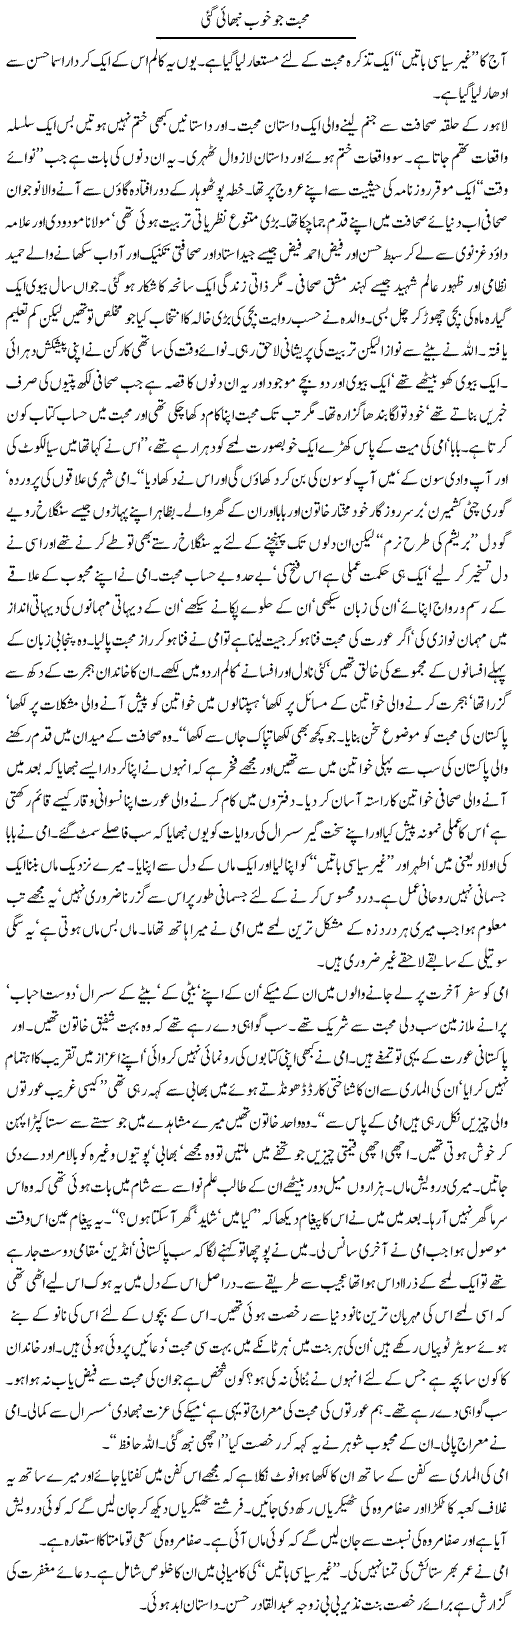 Mohabbat Jo Khoob Nibhai Gayi | Abdul Qadir Hassan | Daily Urdu Columns